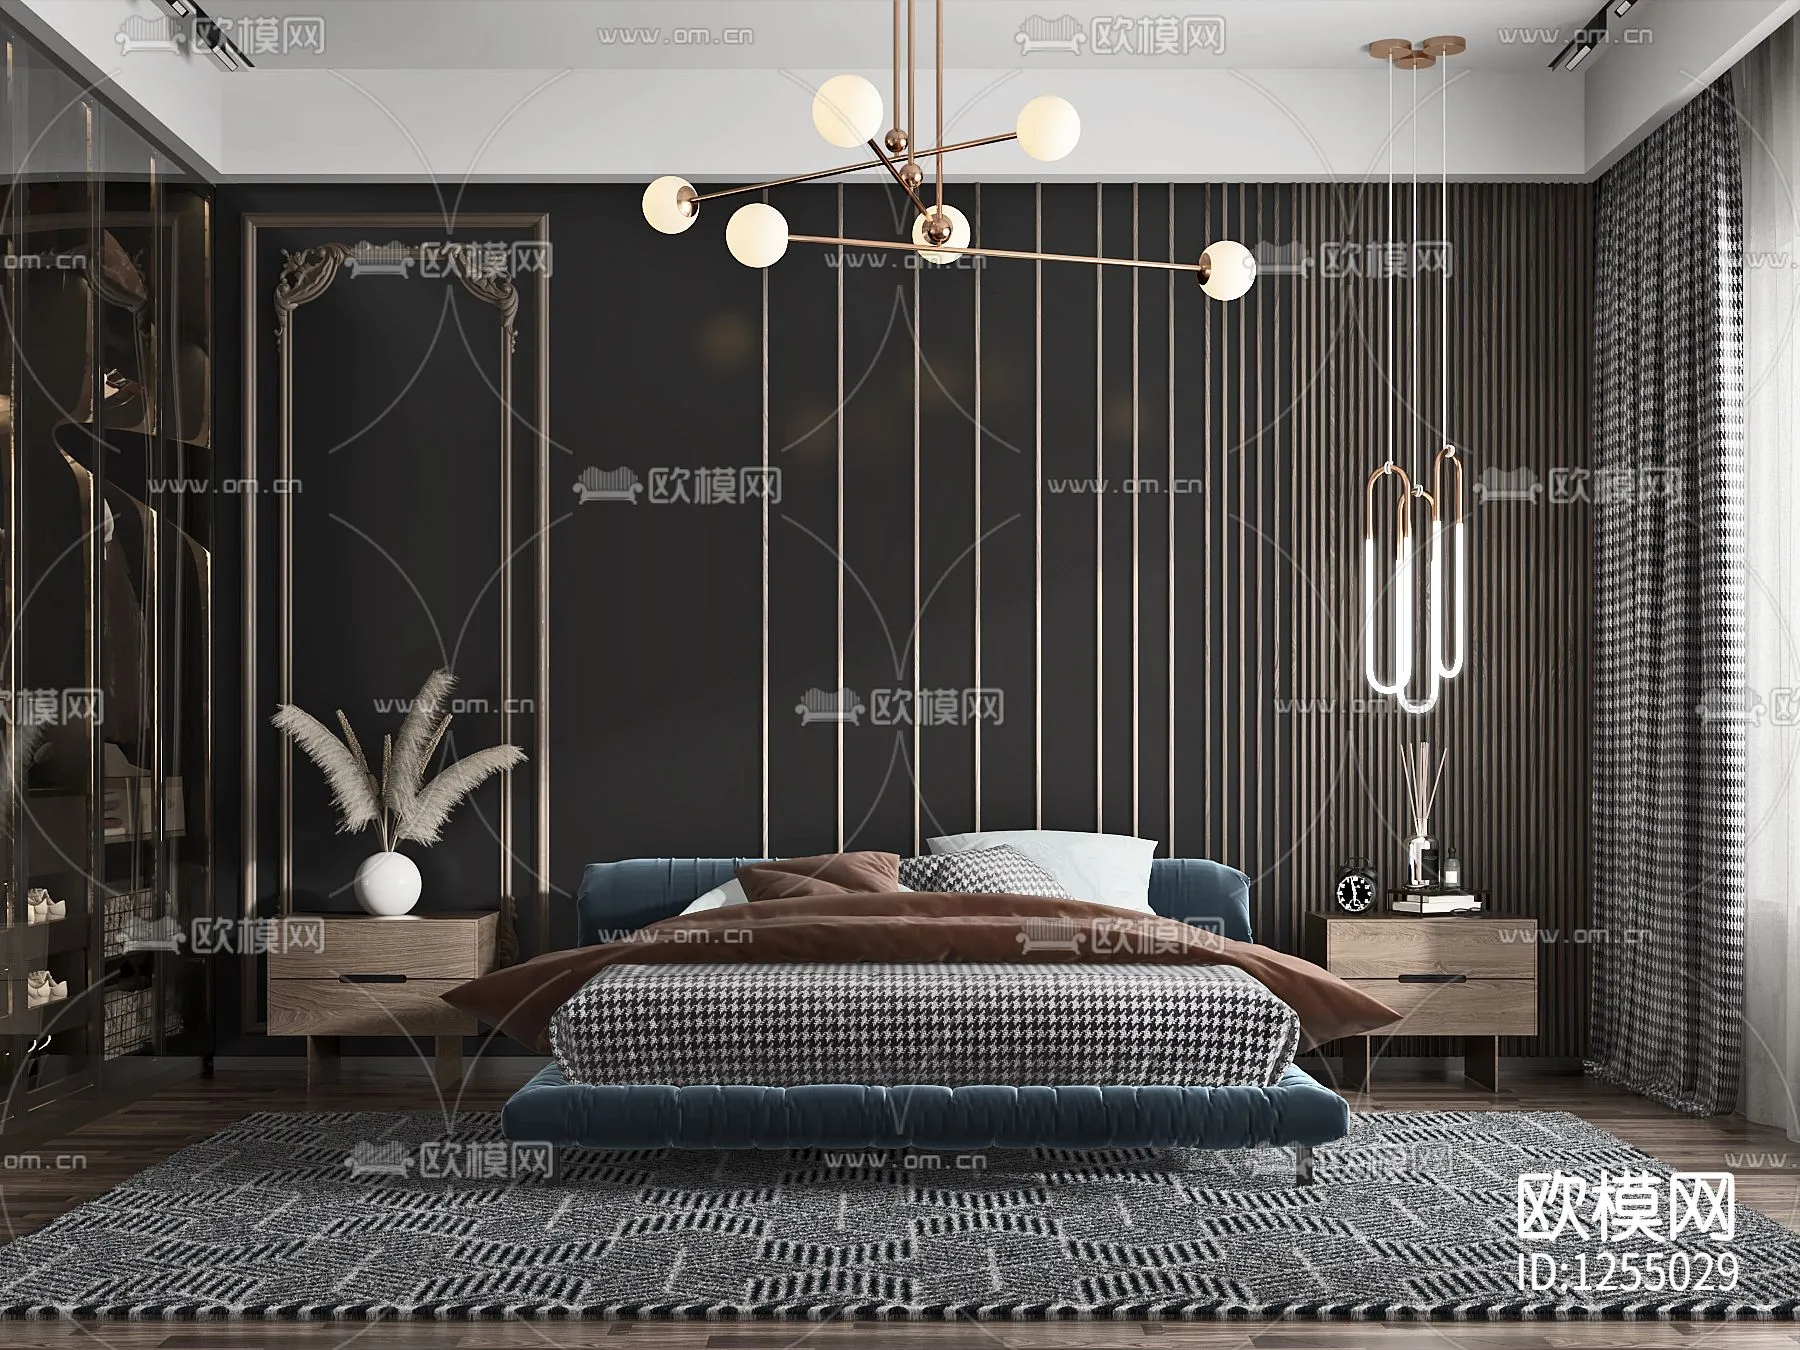 Bedroom 3D Scenes – 0202